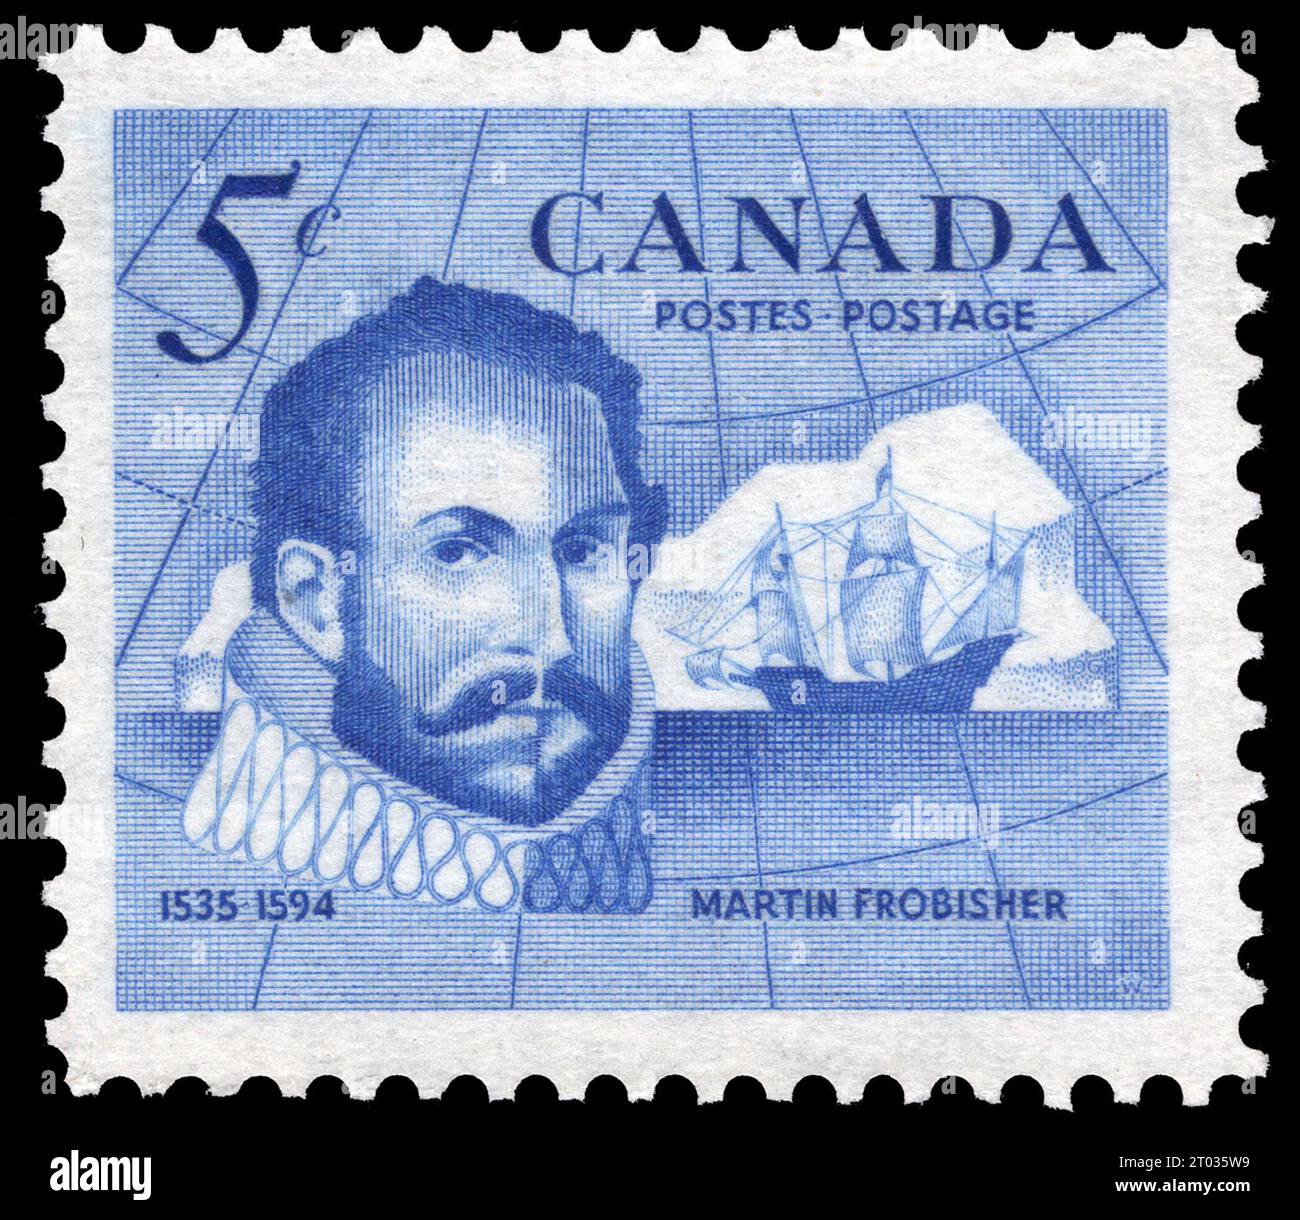 Timbre-poste commémoratif canadien émis en 1963 Banque D'Images